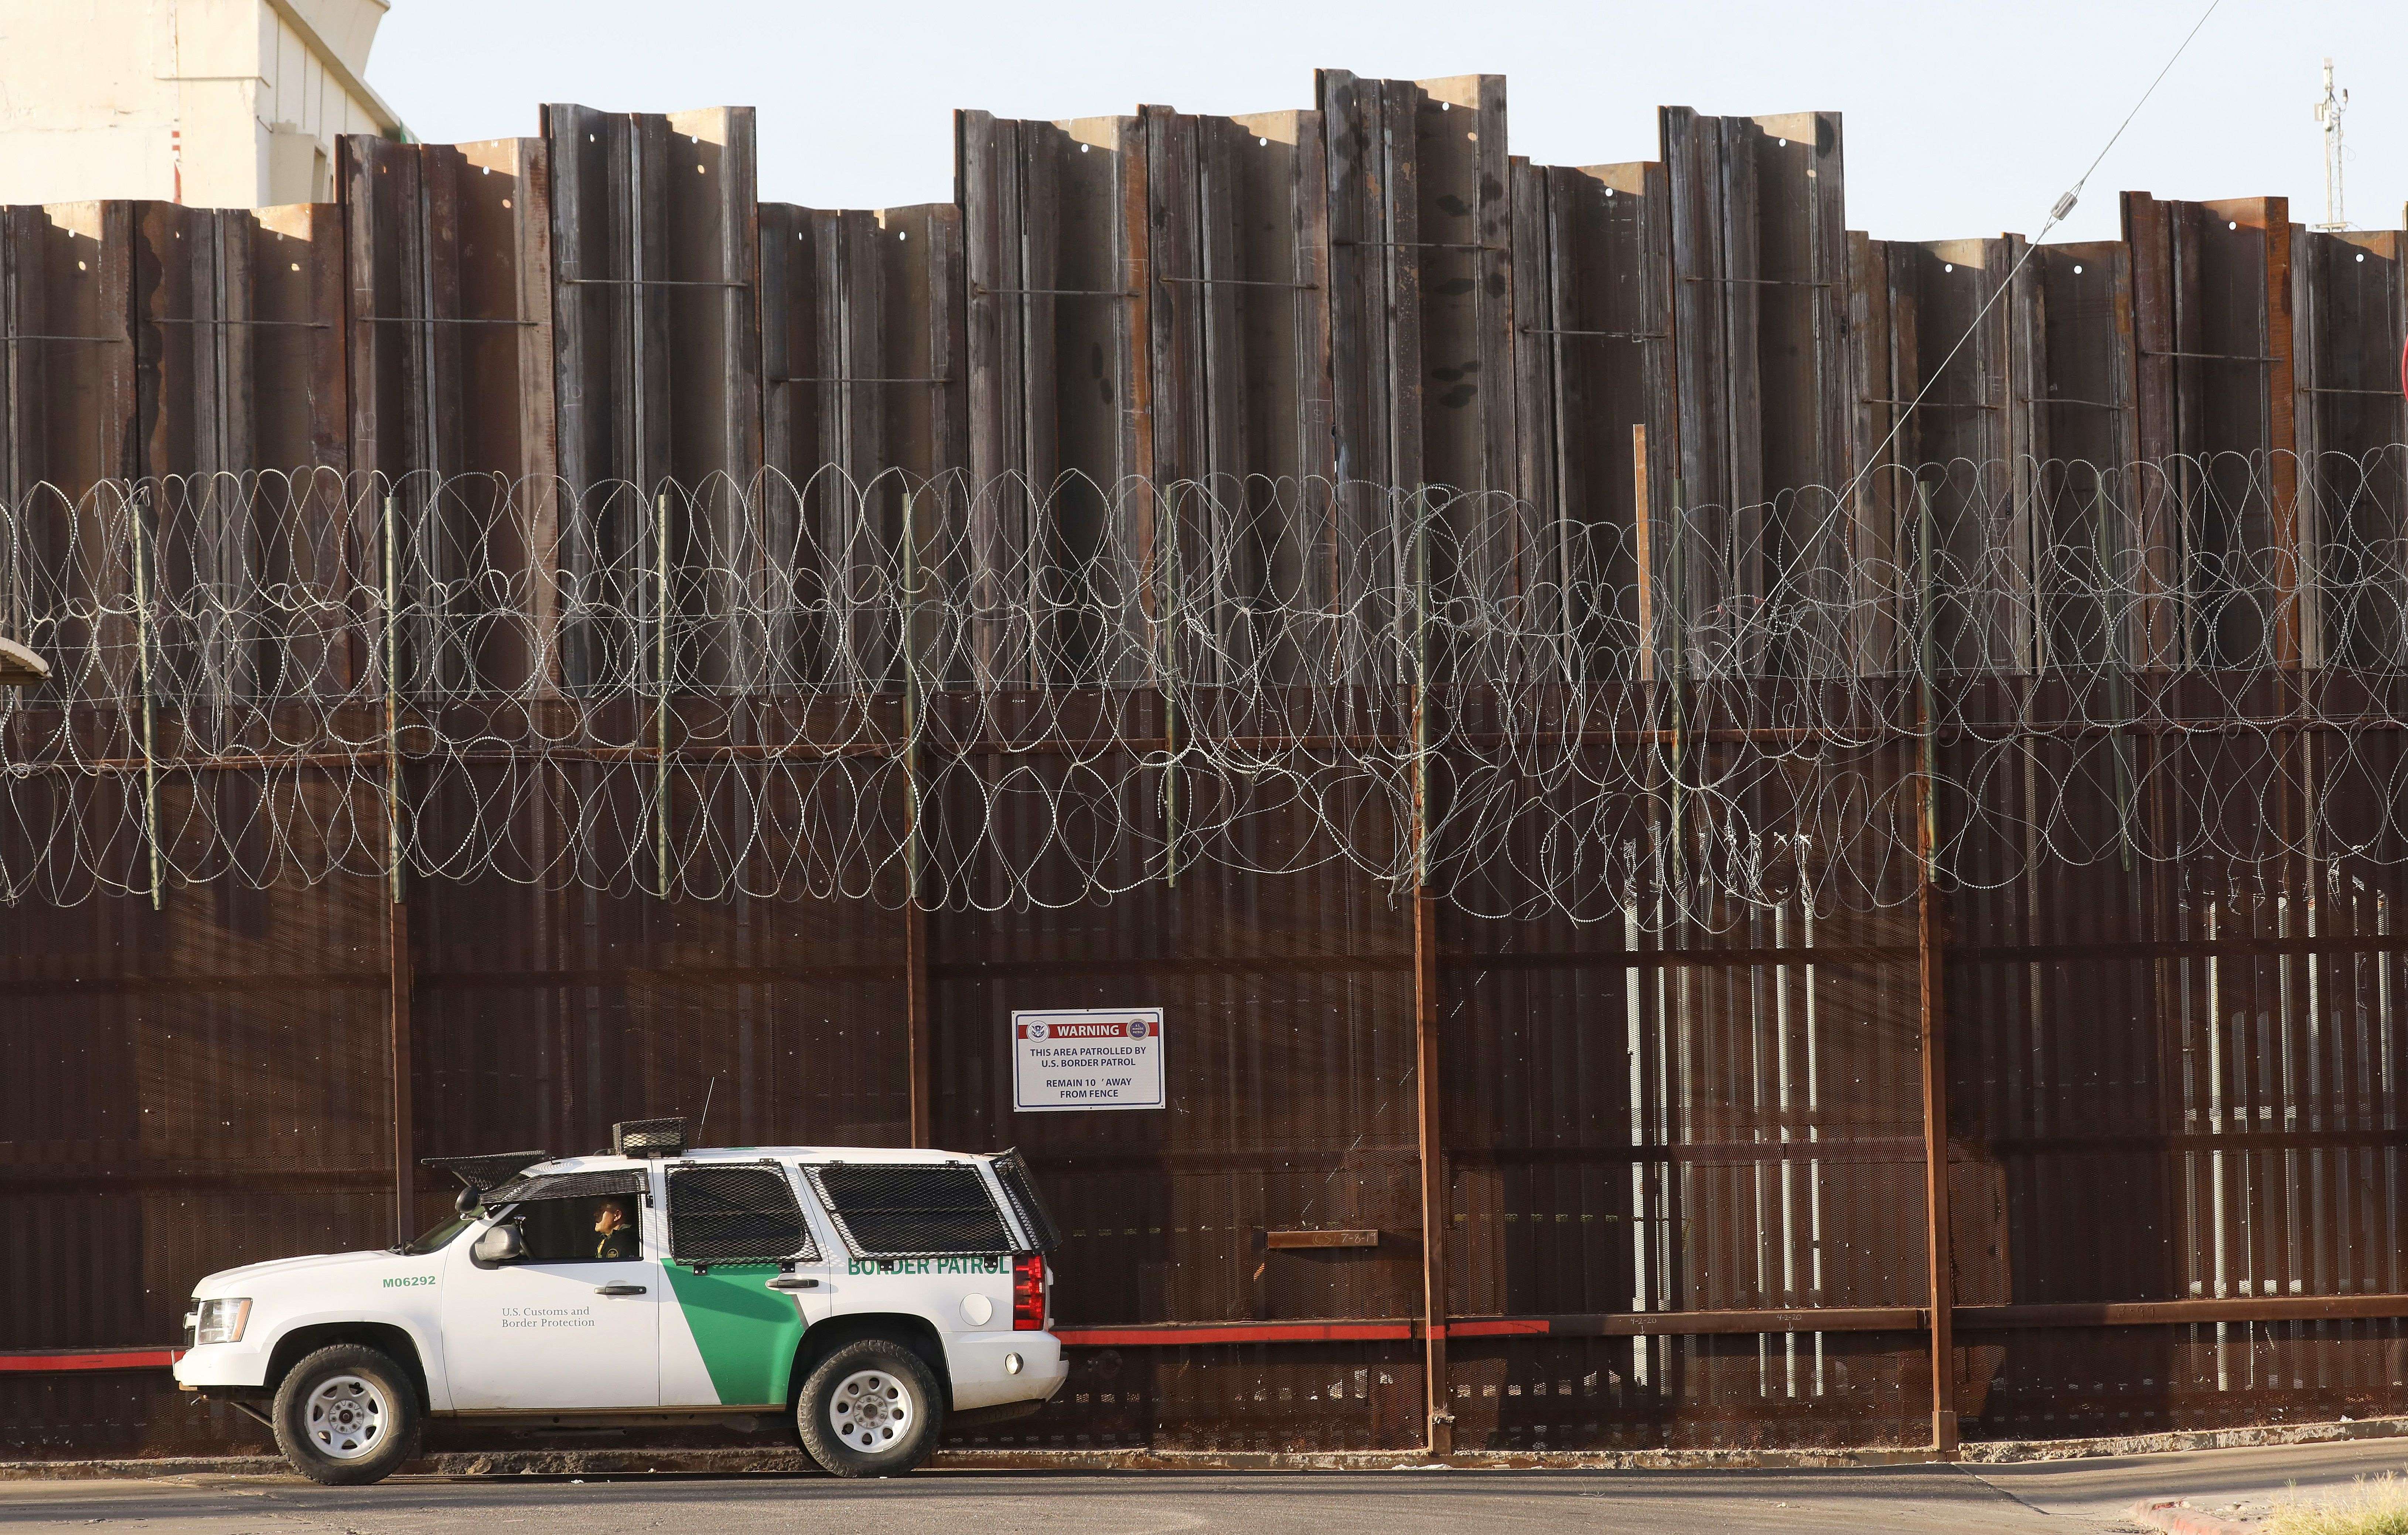 A pesar de que hay un descenso en la detención de migrantes en la frontera sur de Estados Unidos, septiembre último fue el mes con más arrestos desde 2012. (Foto Prensa Libre: Hemeroteca PL)